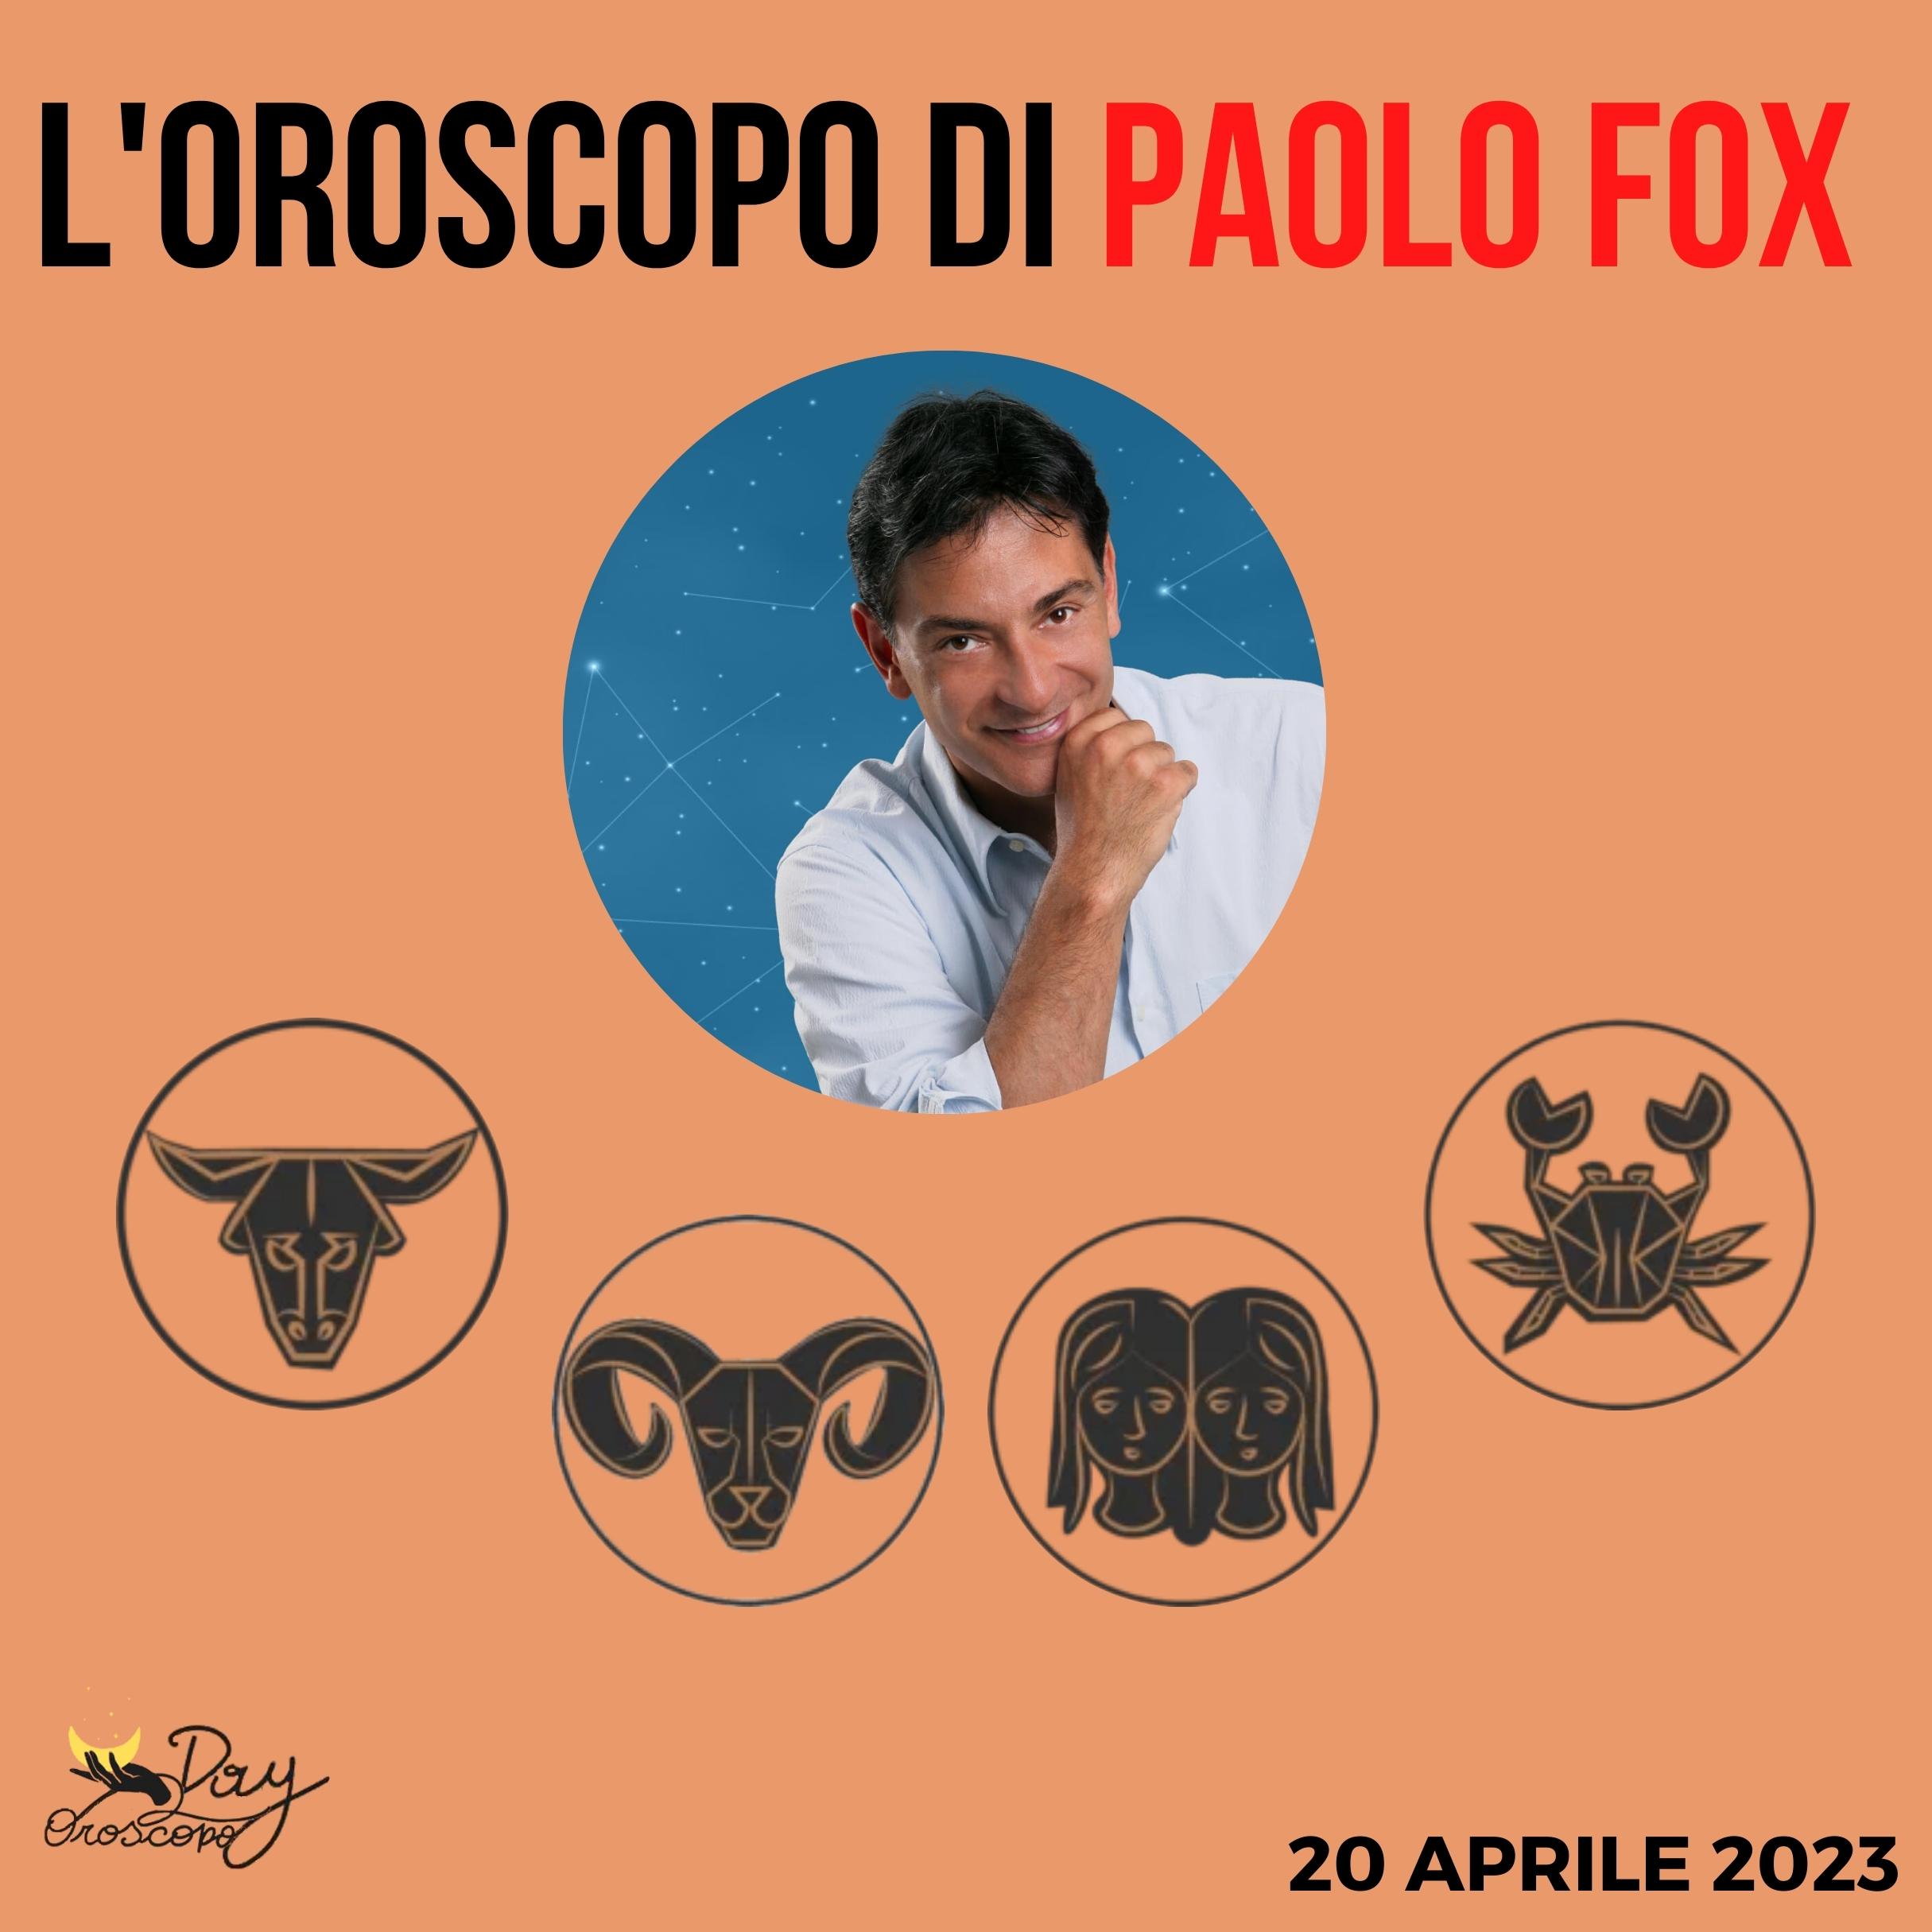 Oroscopo oggi domani Paolo Fox 20 aprile Toro Ariete Gemelli Cancro